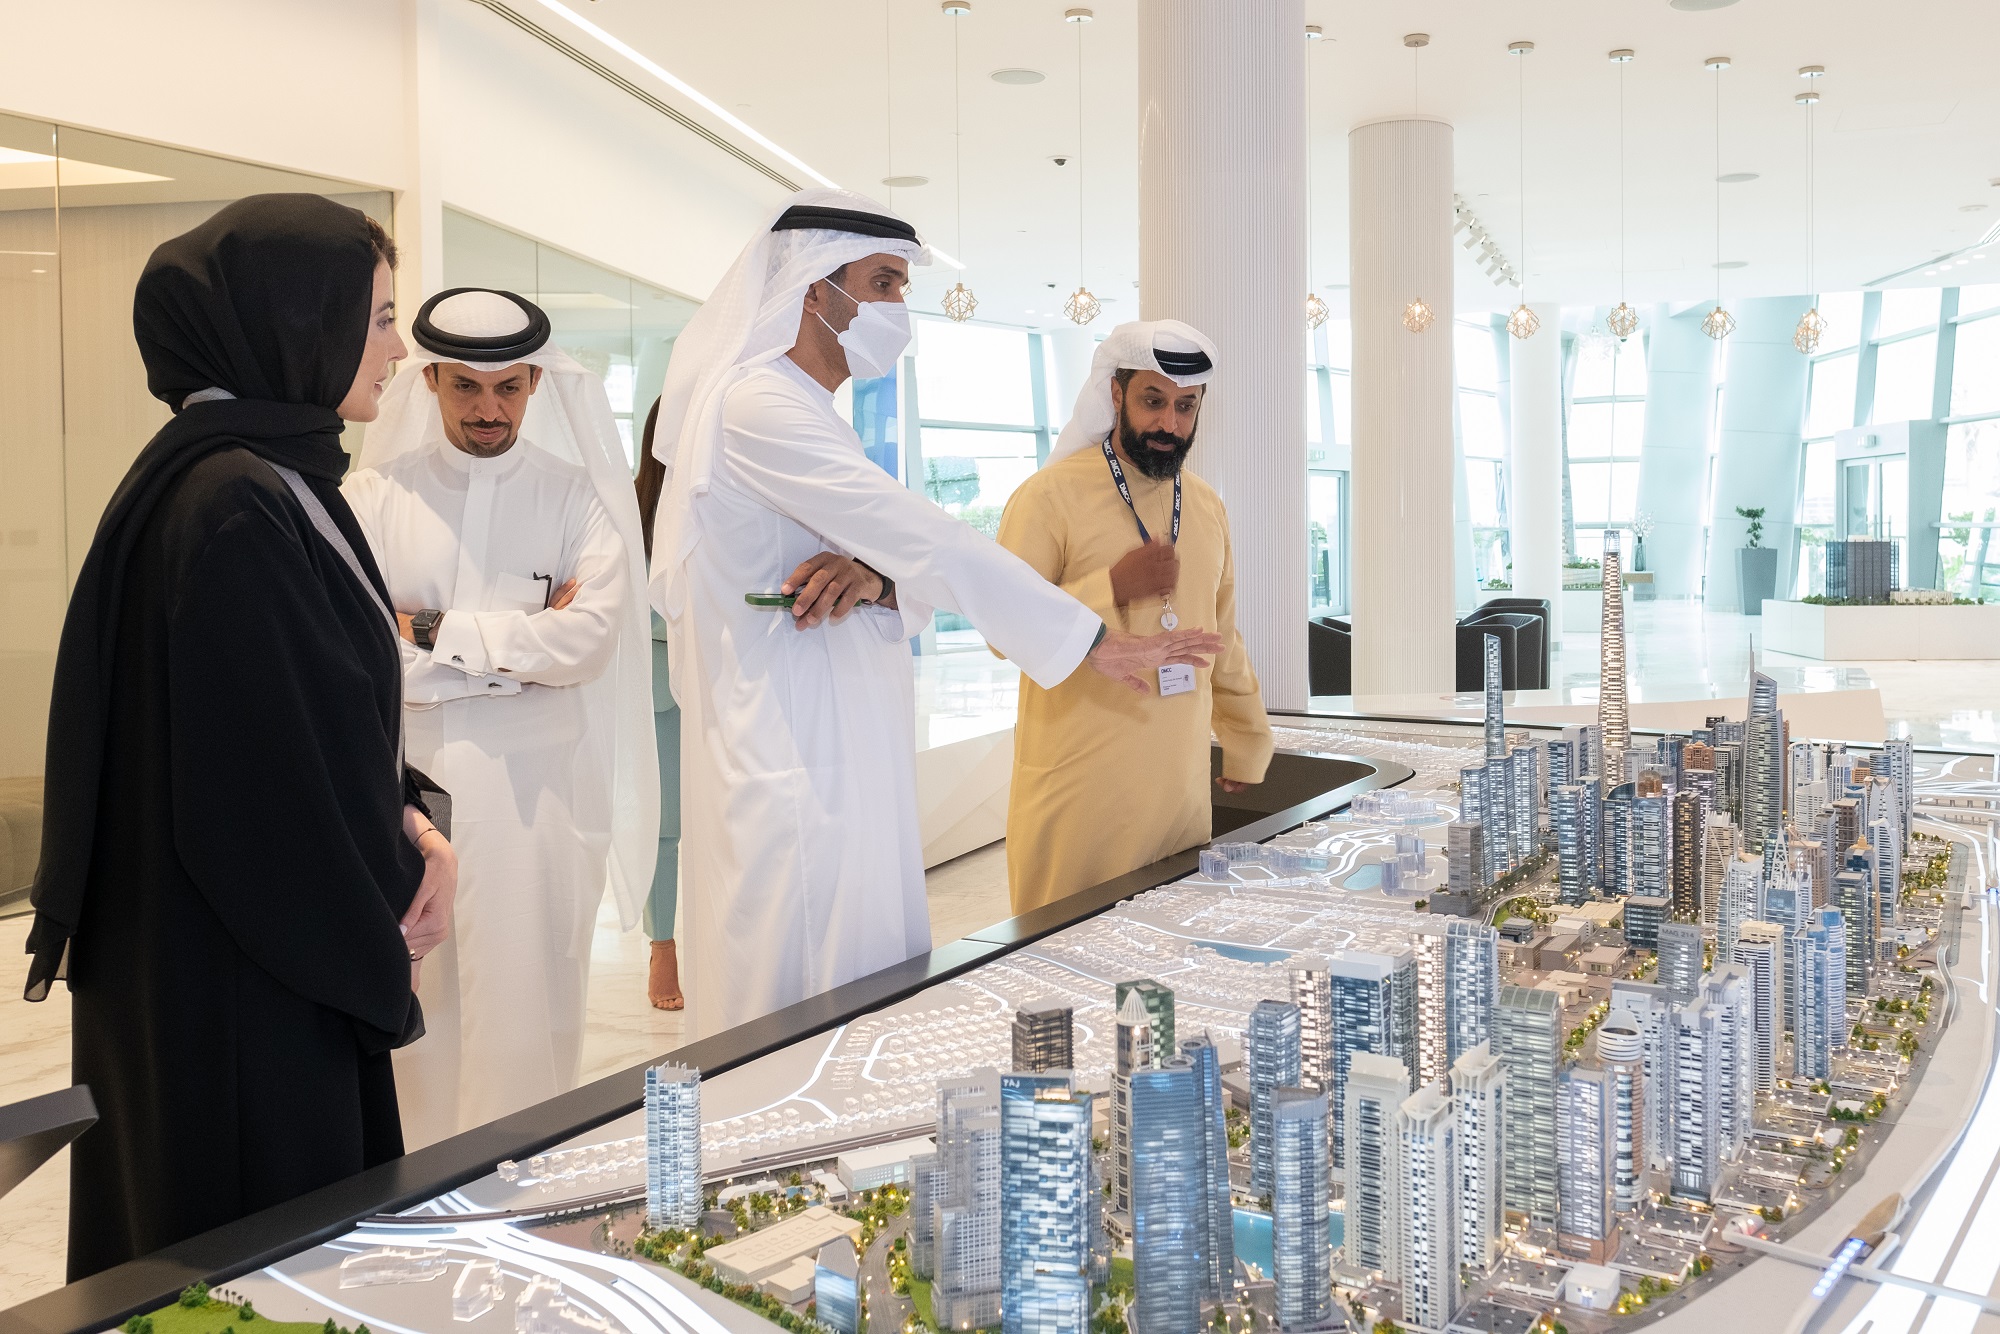 يستقبل مركز دبي للسلع المتعددة معالي عبد الله البسطي في مقره ومنشآته التجارية في دبي